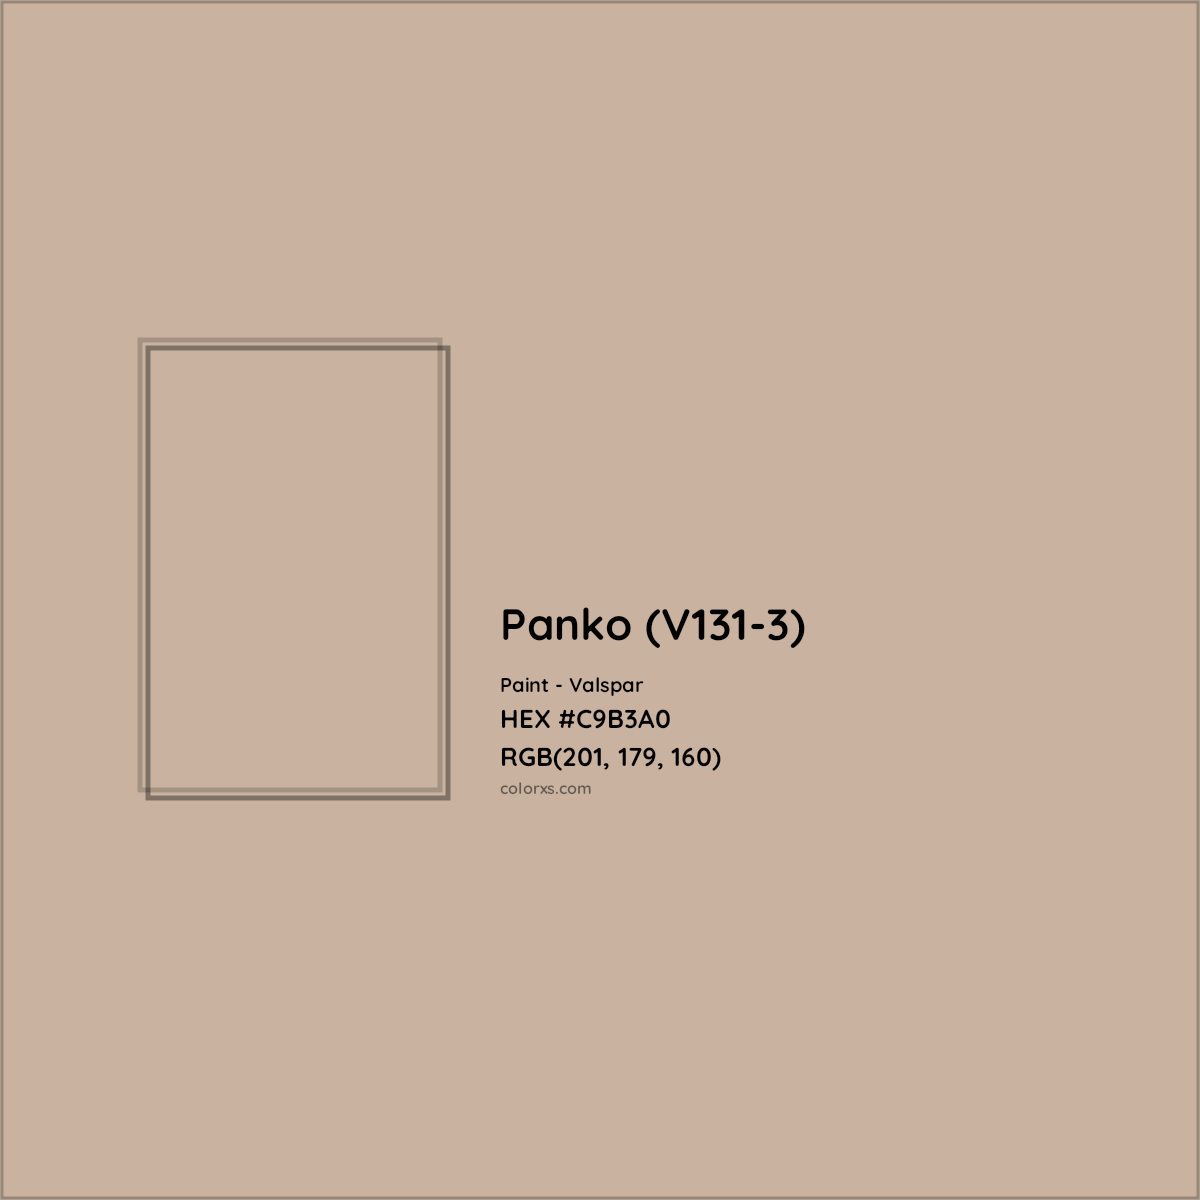 HEX #C9B3A0 Panko (V131-3) Paint Valspar - Color Code